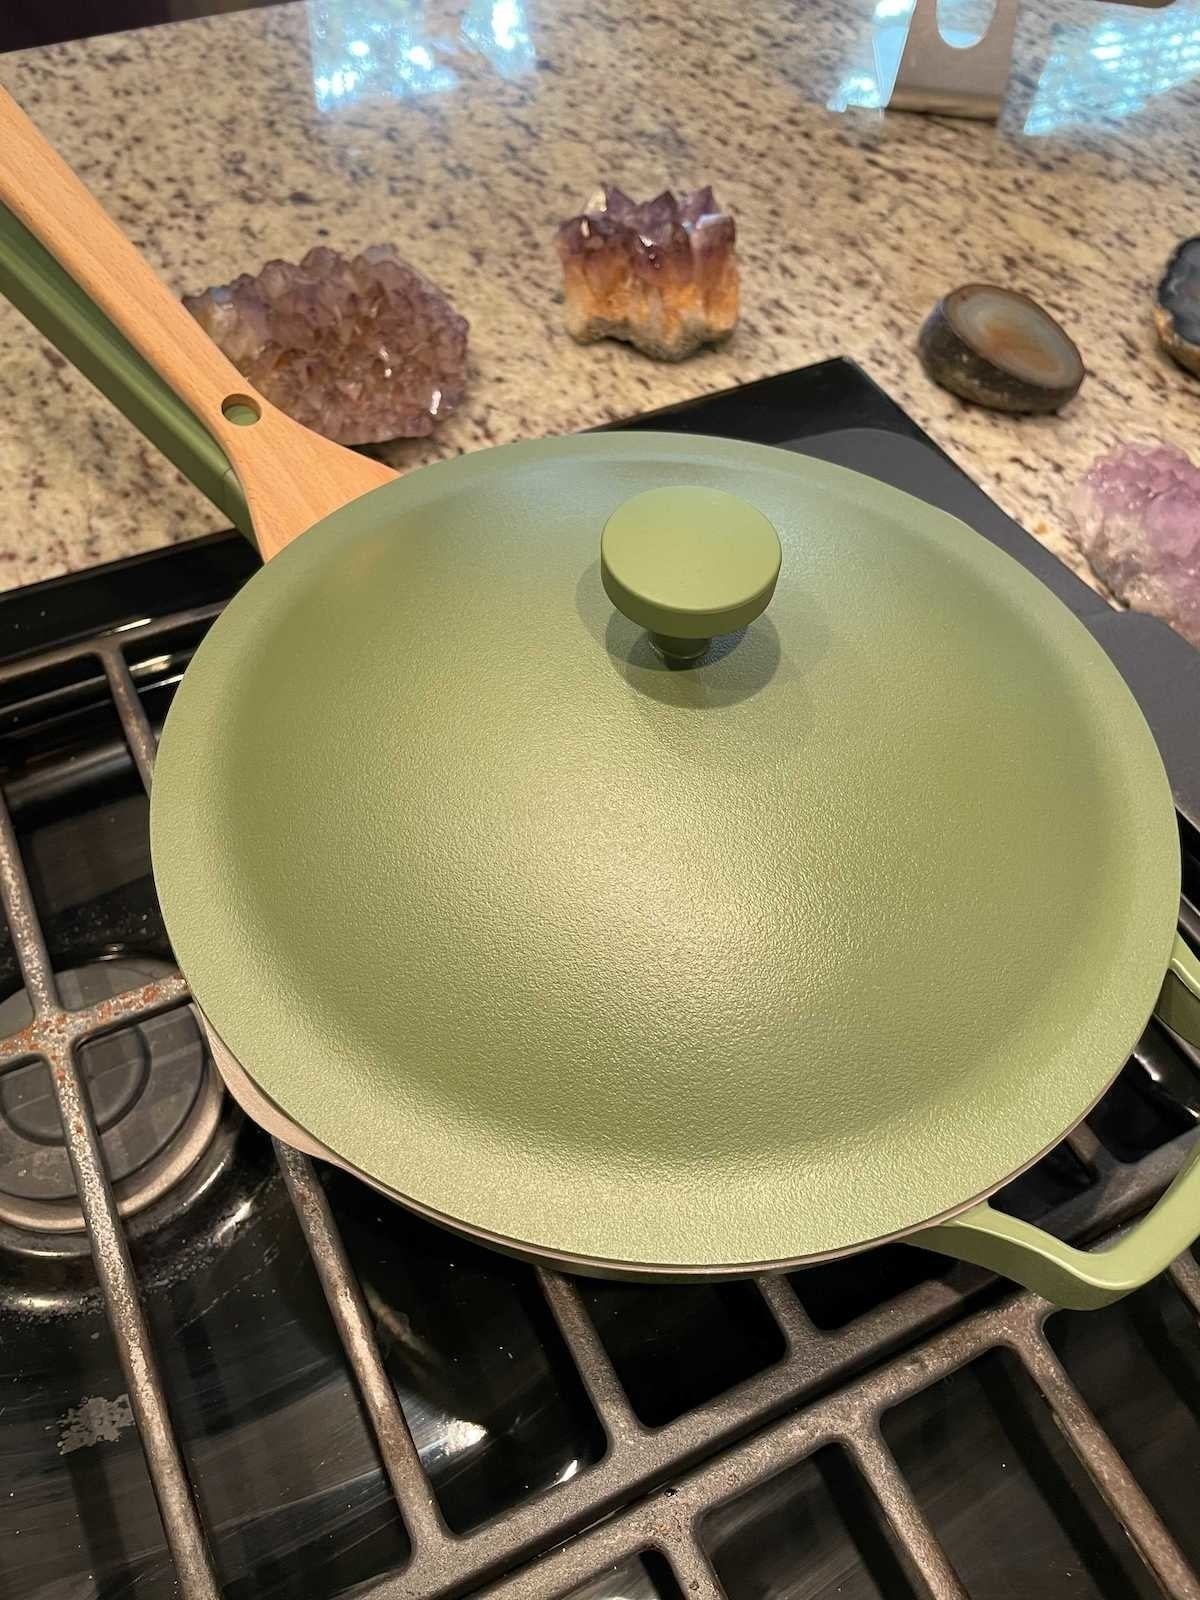 green pan on stove